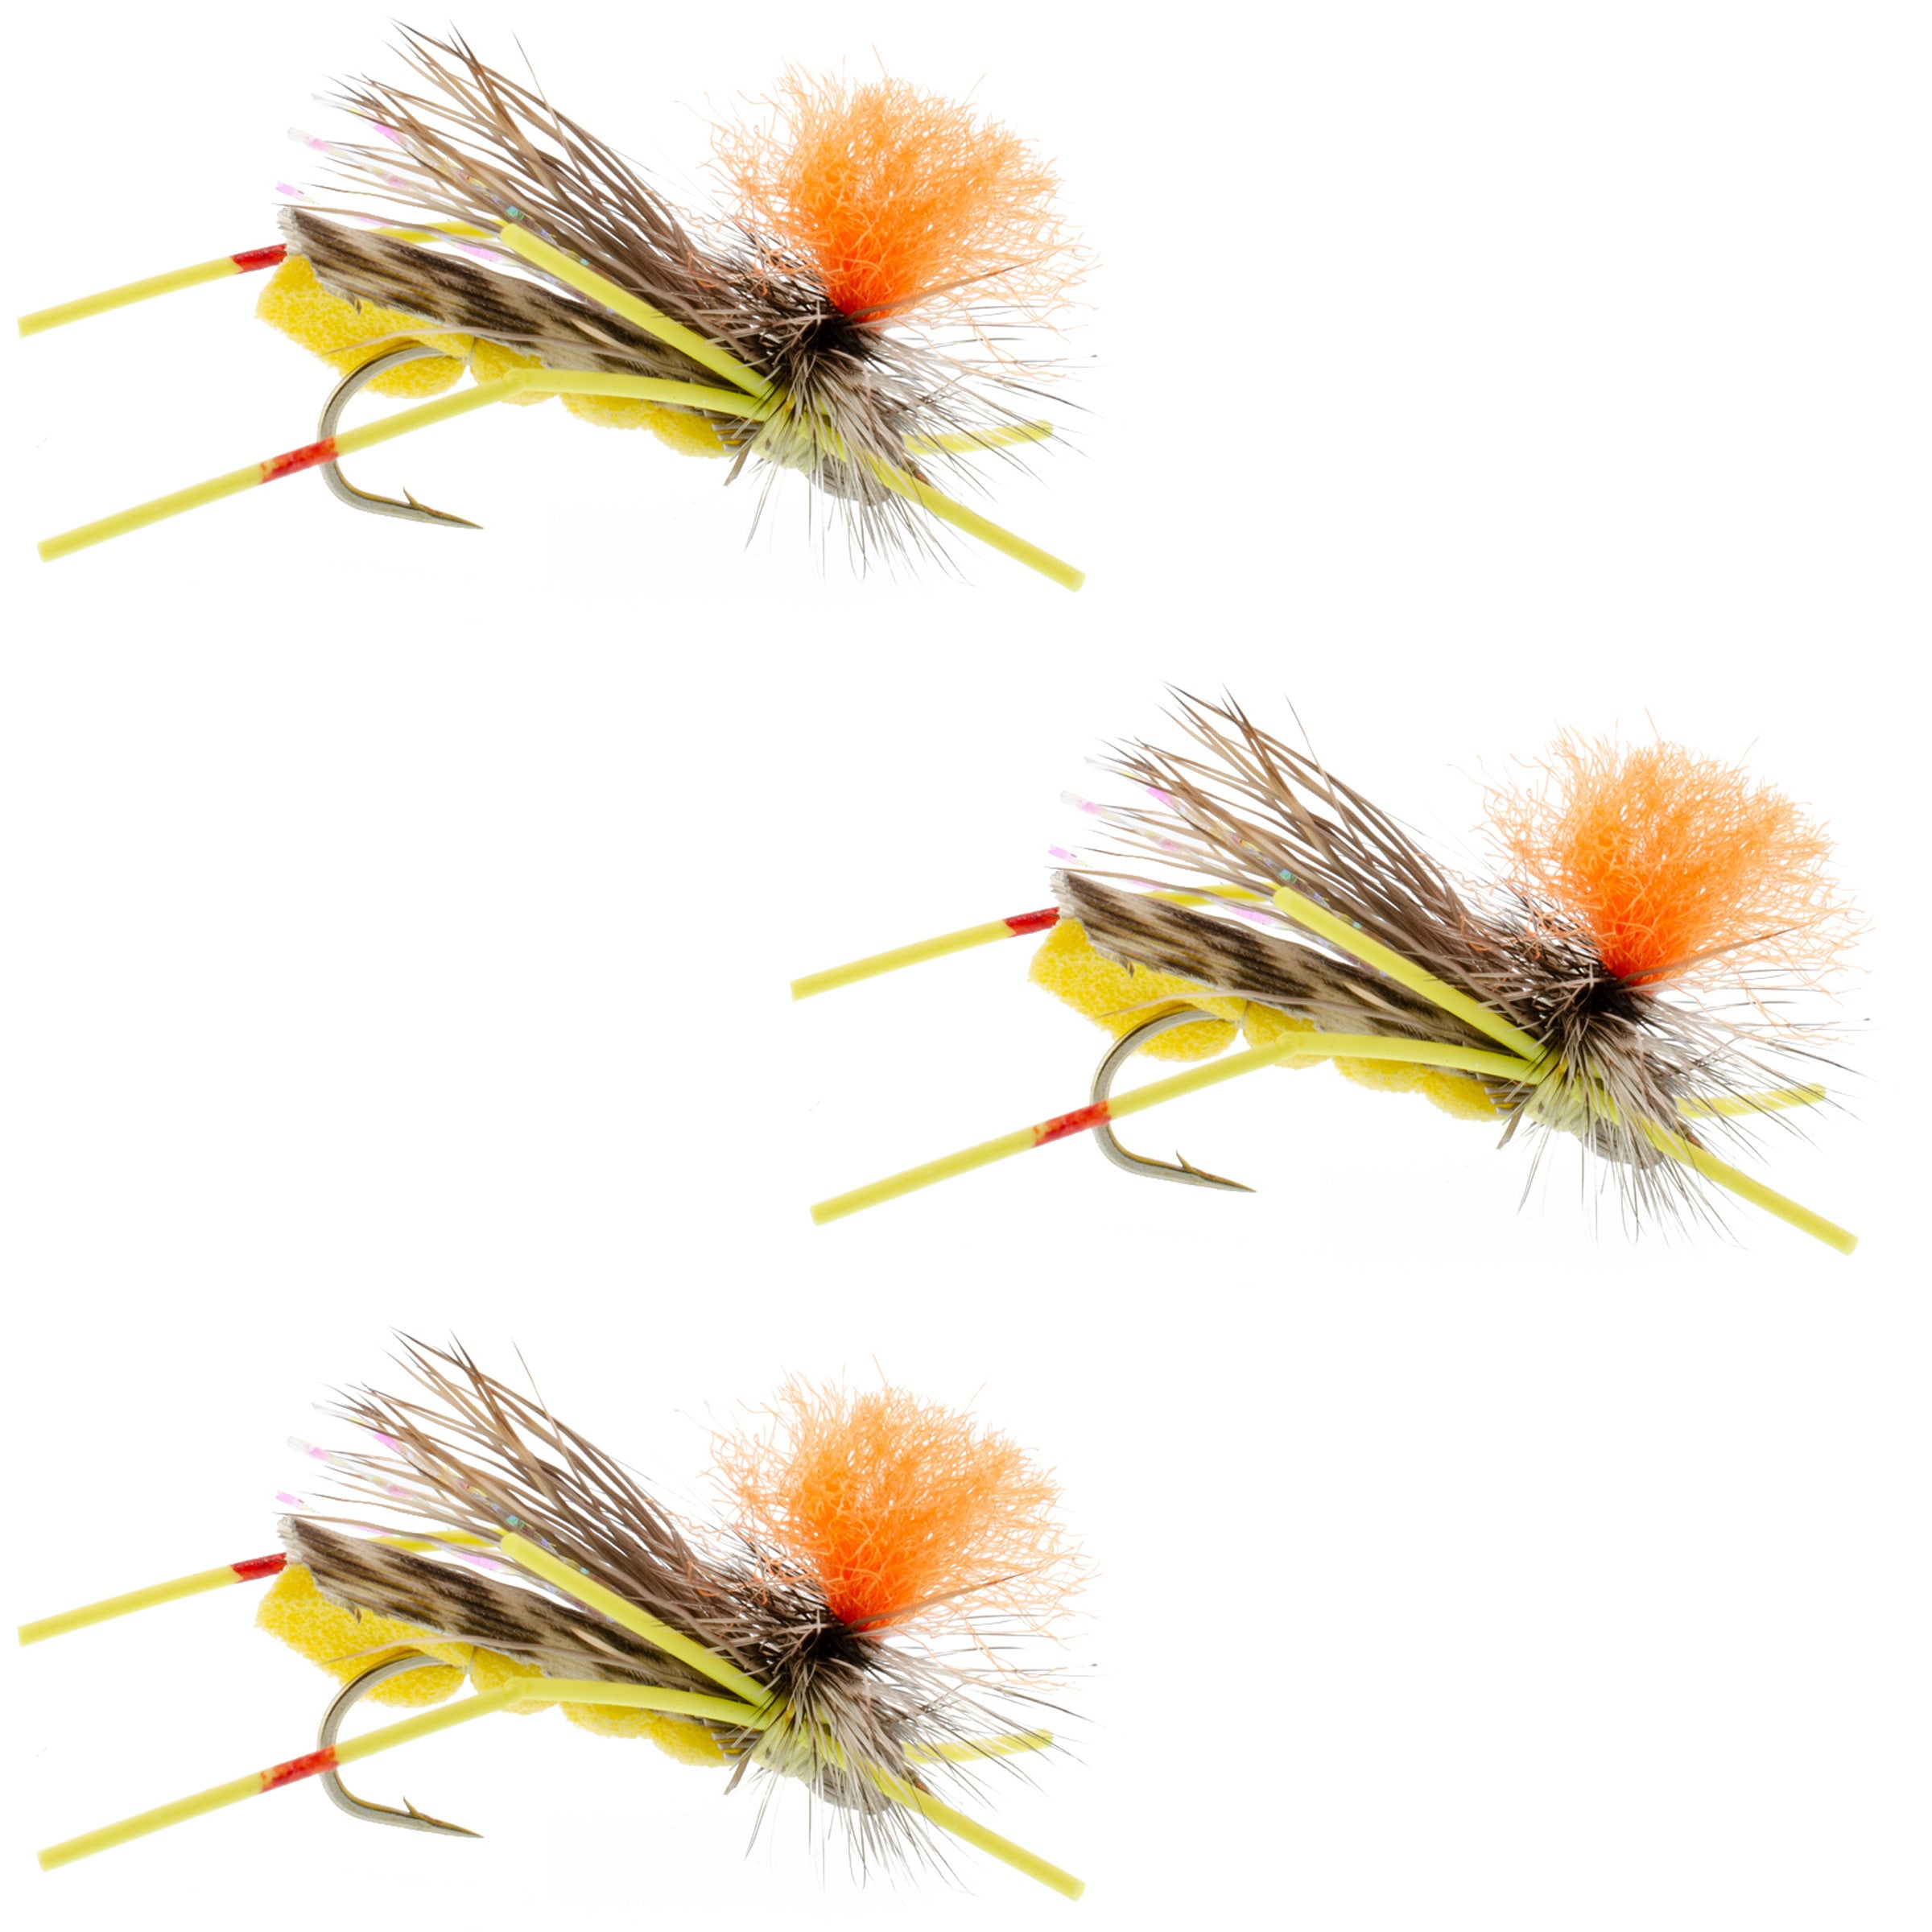 3 Pack Feth Hopper Yellow - Foam Grasshopper Fly Pattern - Hook Size 10